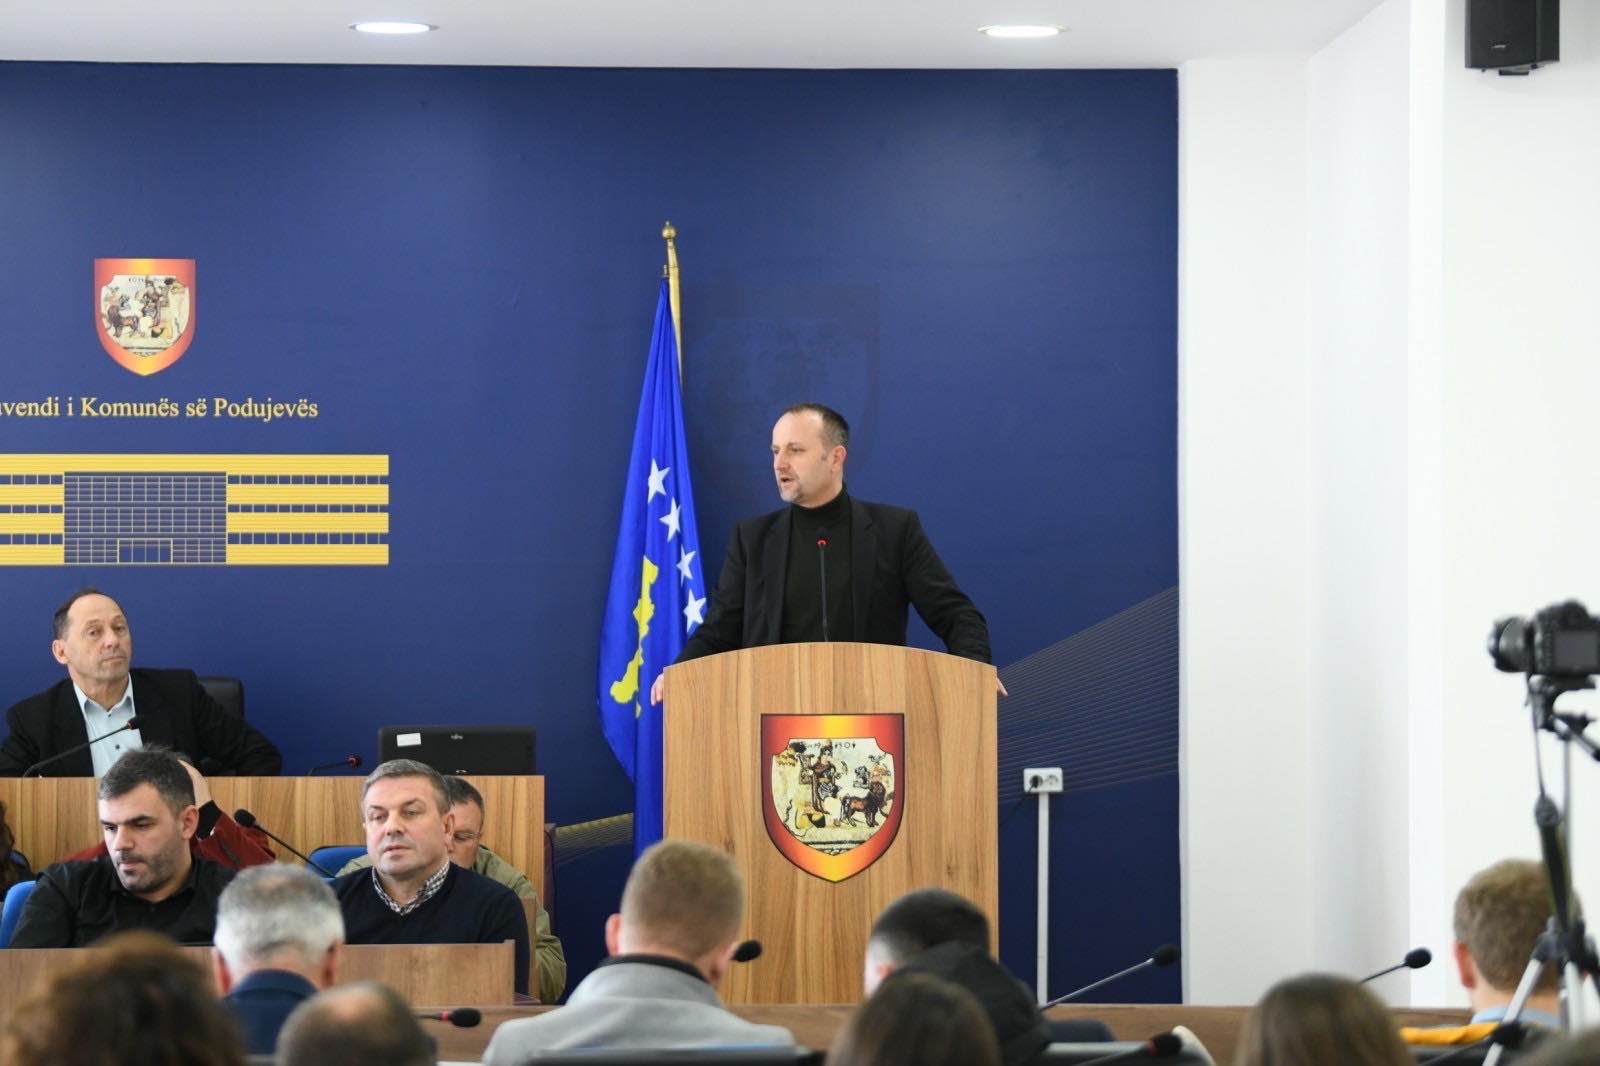  Llapashtica: Ekzekutivi komunal në Podujevë i ka blerë një palë dorëza 14 euro dhe një palë rroba “të llastikut” 28 euro